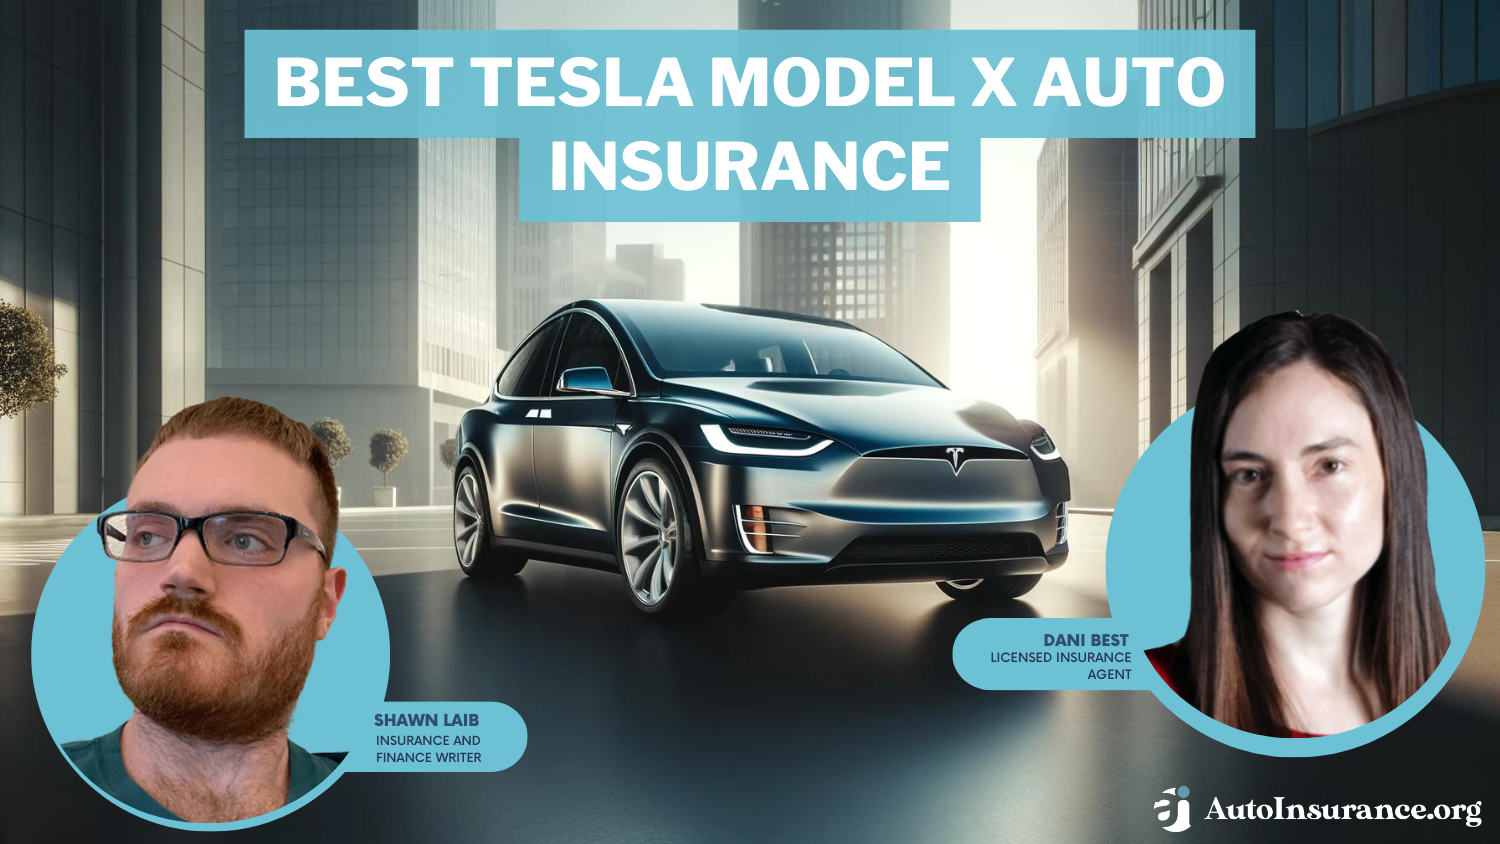 Best Tesla Model X Auto Insurance